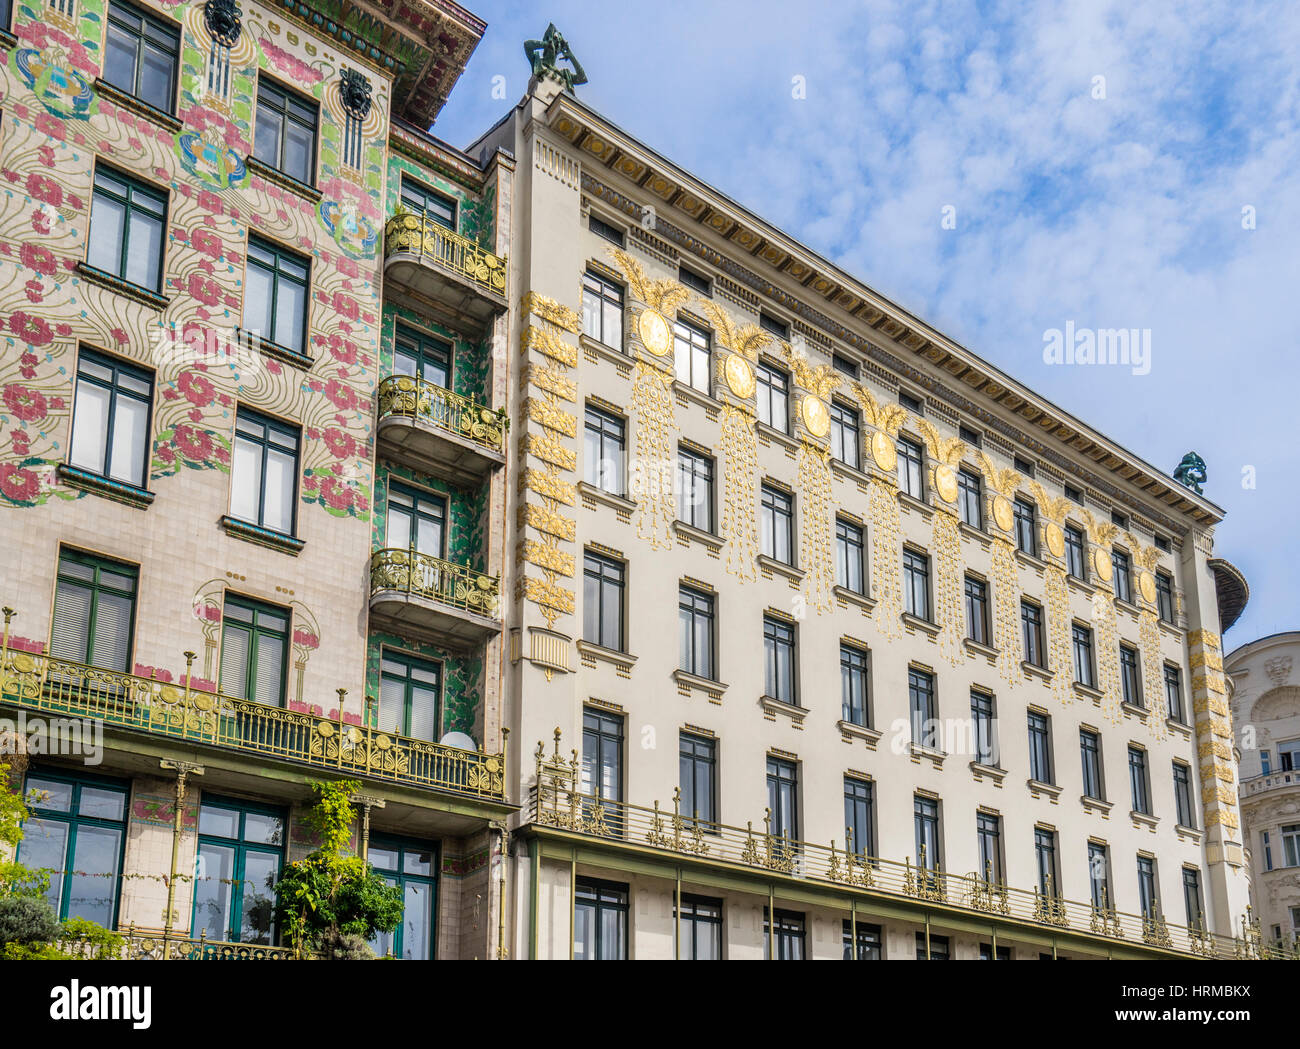 Österreich, Wien, Jugendstil Archtecture an der Wienzeile gegenüber Naschmarkt, Blick auf die Majolika House Wth seine floralen glasierten Fliesen-ornament Stockfoto